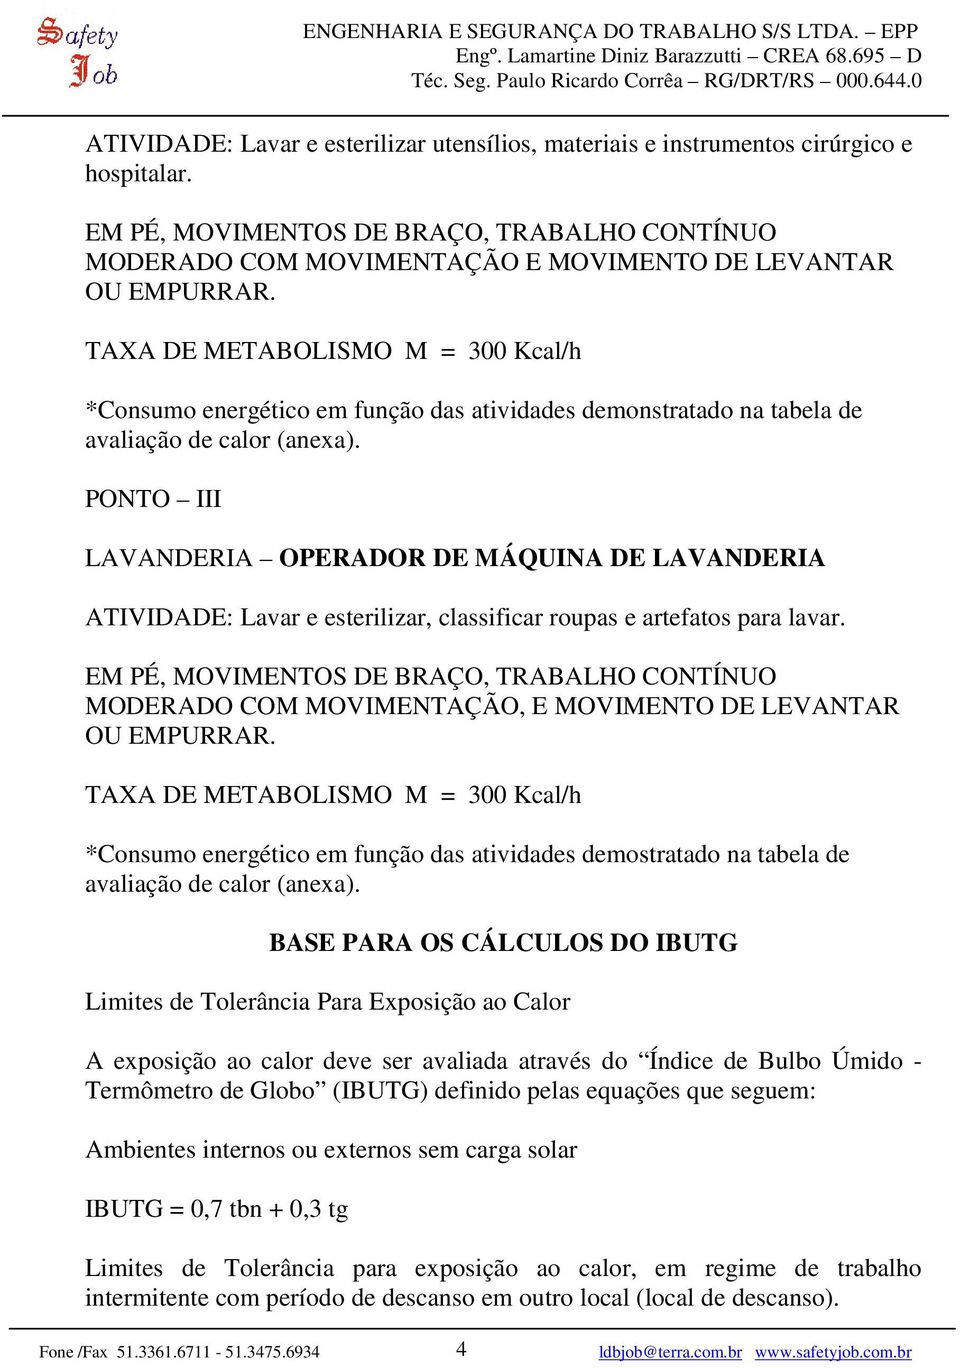 PONTO III LAVANDERIA OPERADOR DE MÁQUINA DE LAVANDERIA ATIVIDADE: Lavar e esterilizar, classificar roupas e artefatos para lavar.